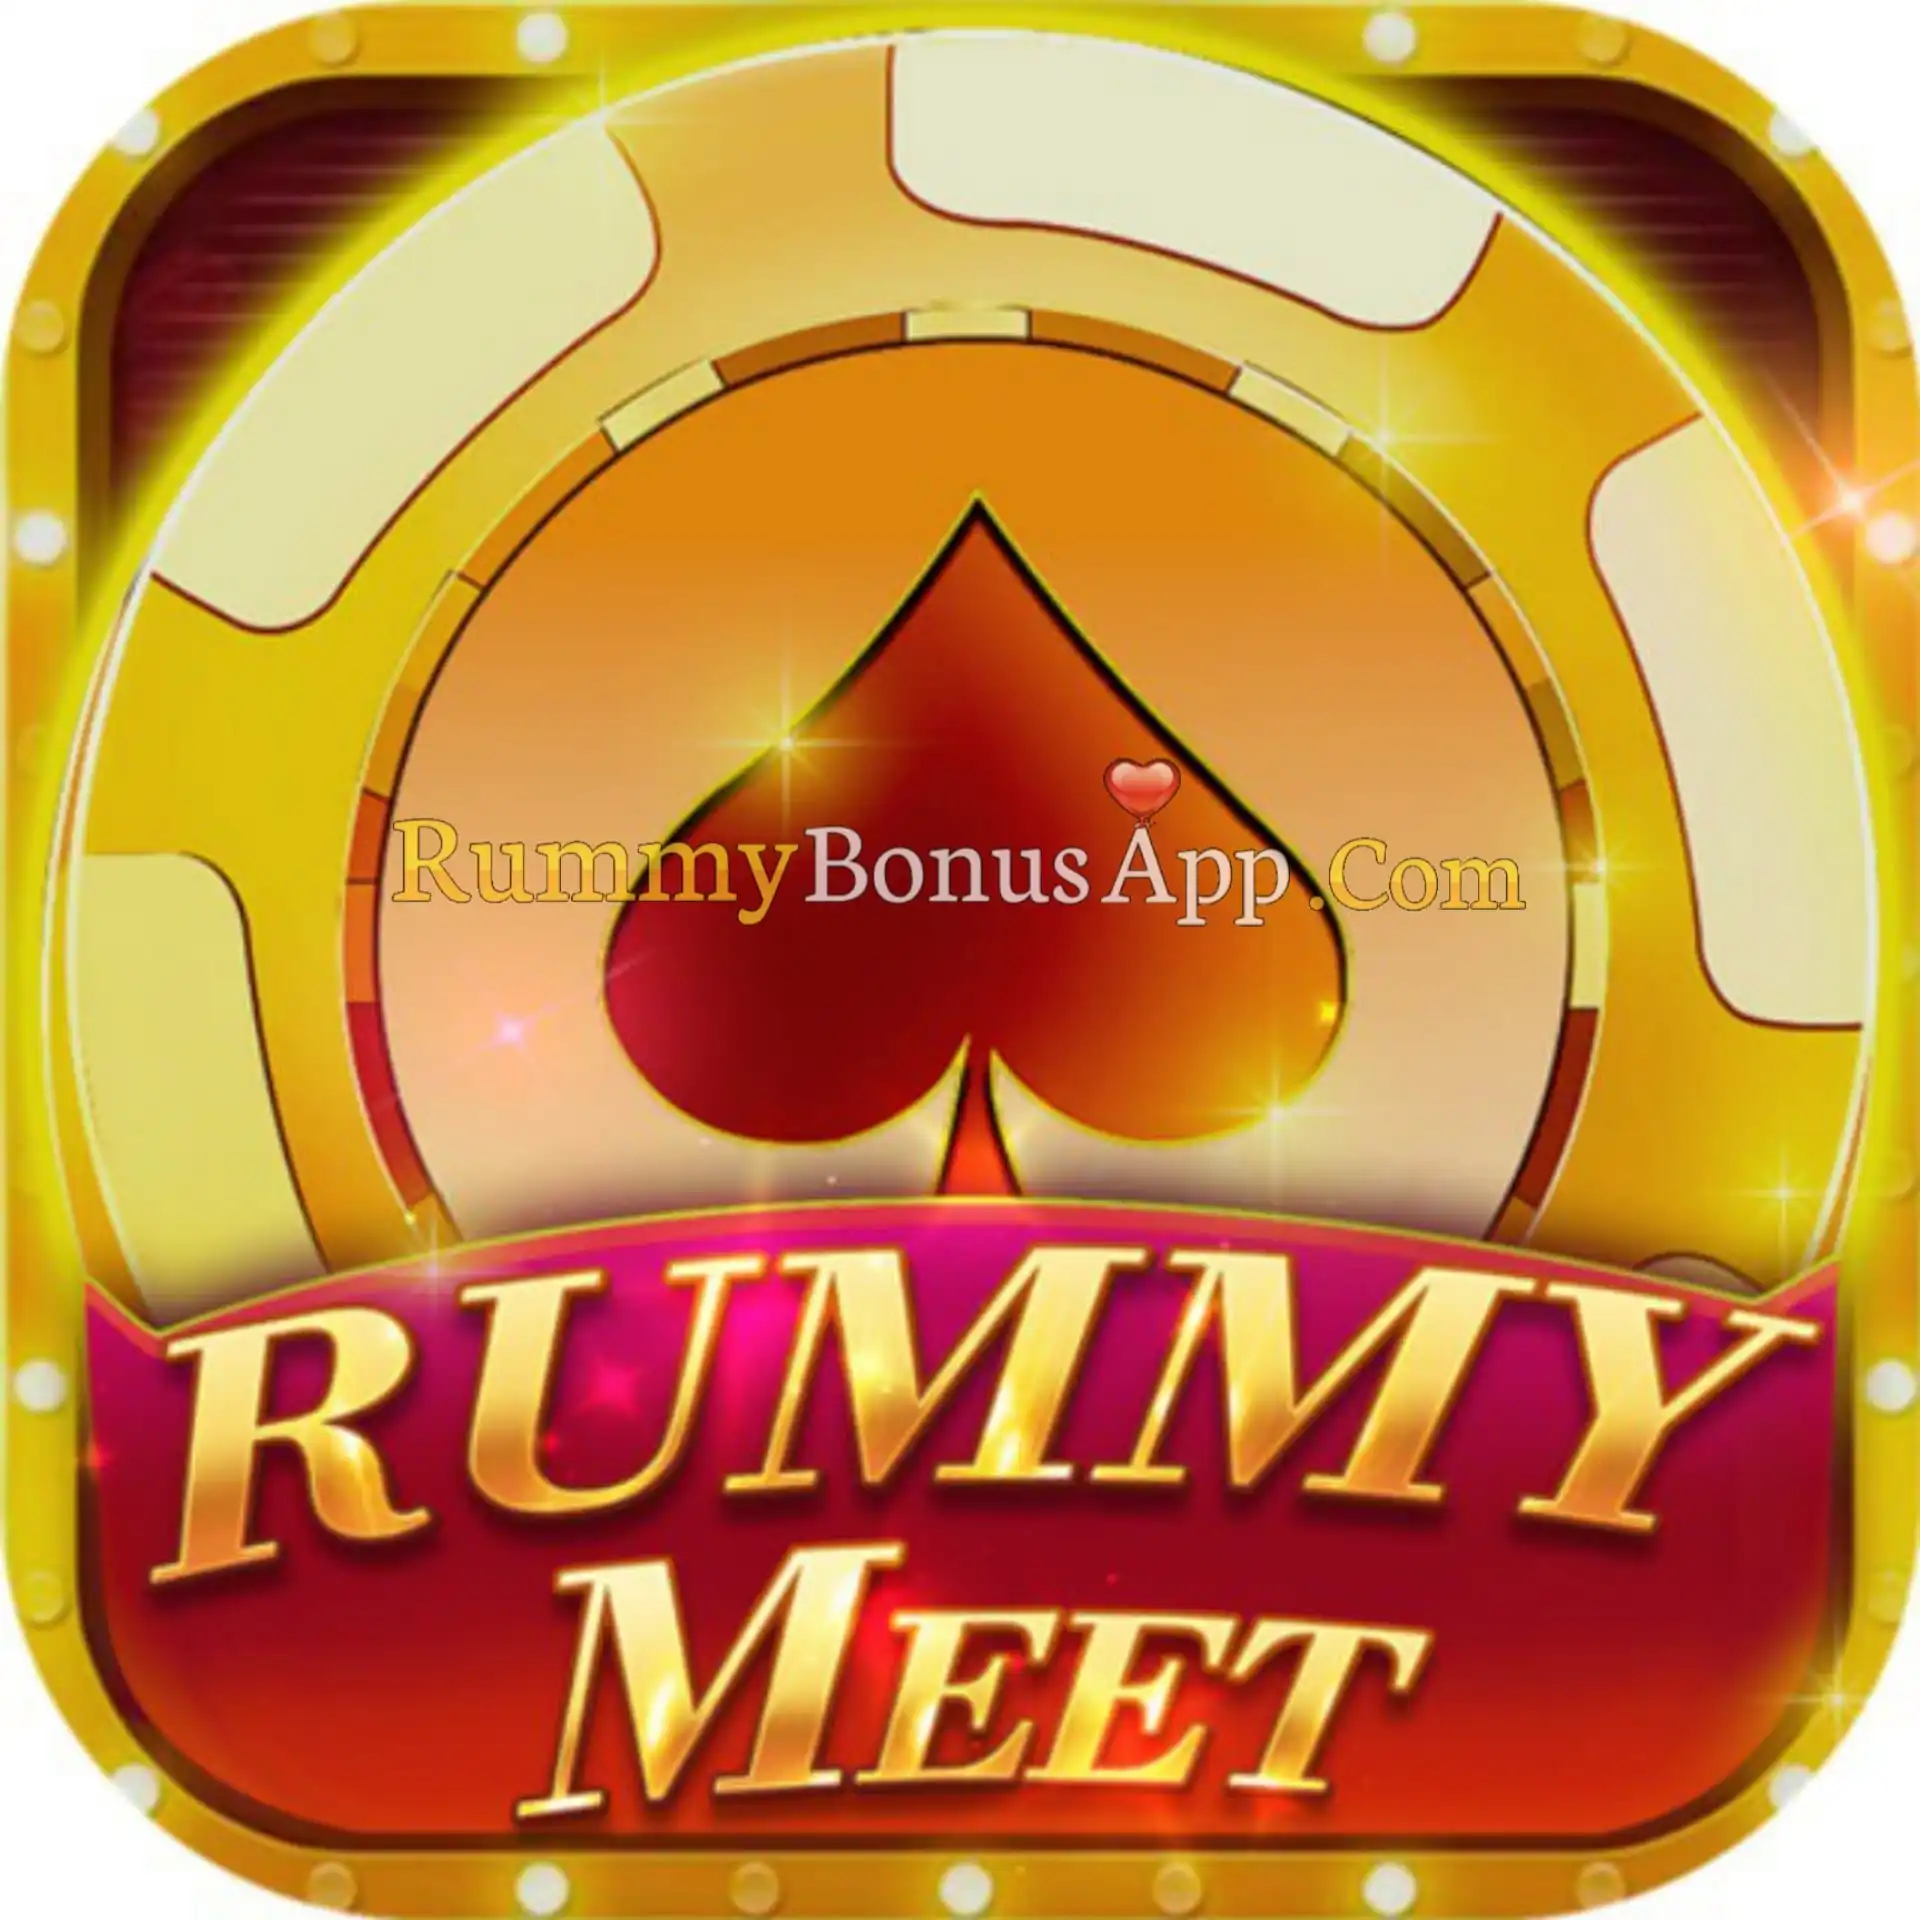 Rummy Meet - All Rummy App - All Rummy Apps - RummyBonusApp